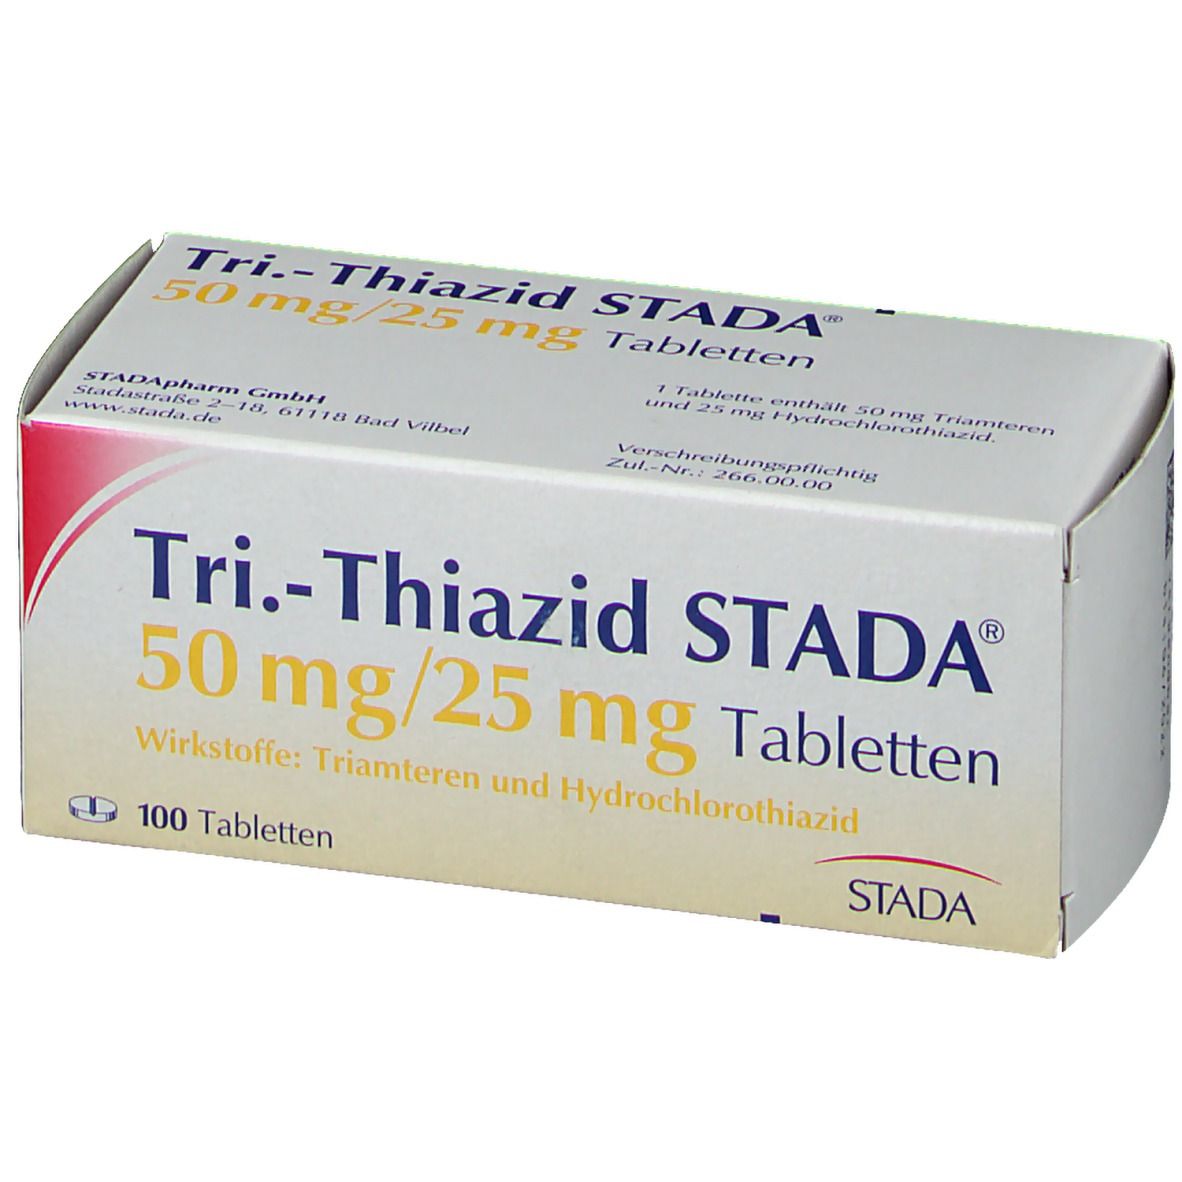 Tri.-Thiazid STADA® 50 mg/25 mg